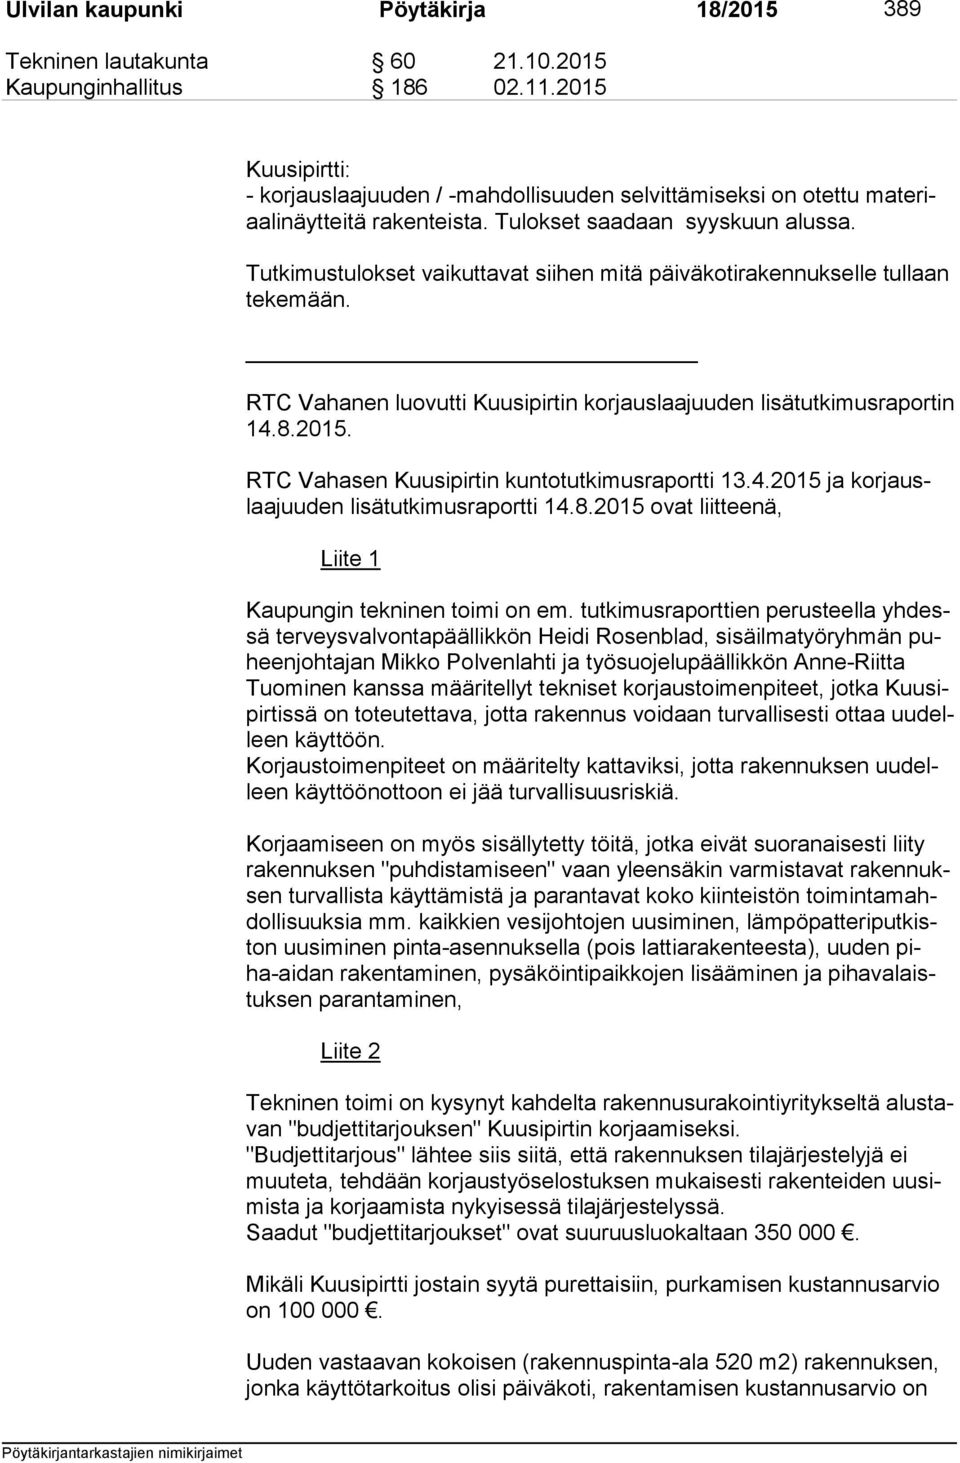 Tutkimustulokset vaikuttavat siihen mitä päiväkotirakennukselle tullaan te ke mään. RTC Vahanen luovutti Kuusipirtin korjauslaajuuden lisätutkimusraportin 14.8.2015.